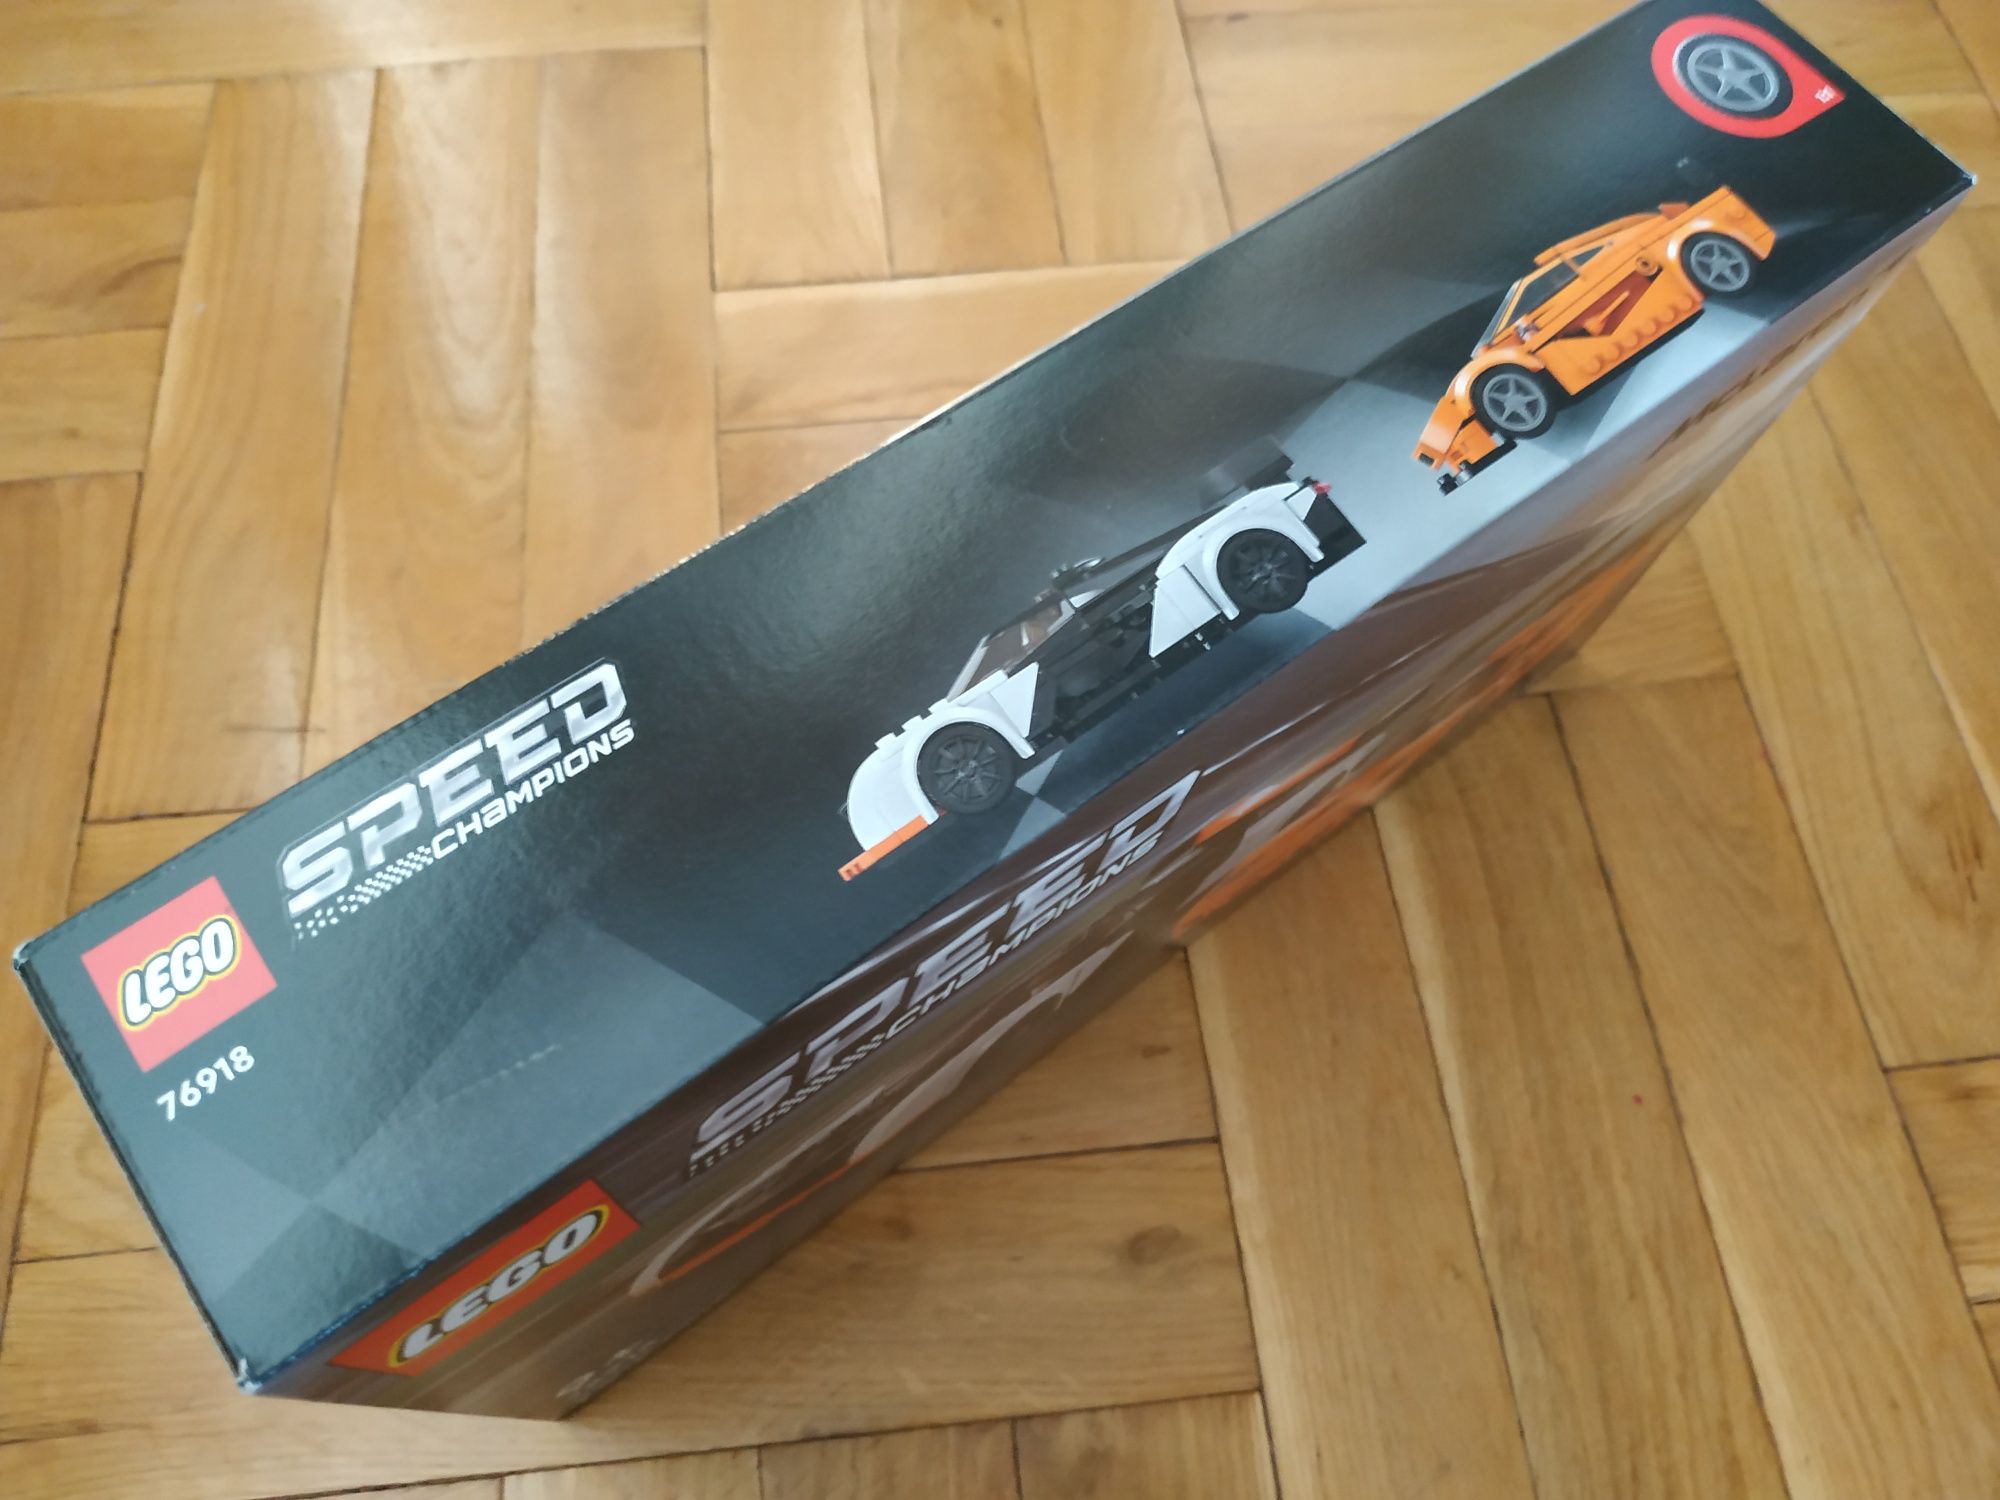 LEGO Speed Champions 76918 McLaren Solus GT i McLaren F1 LM